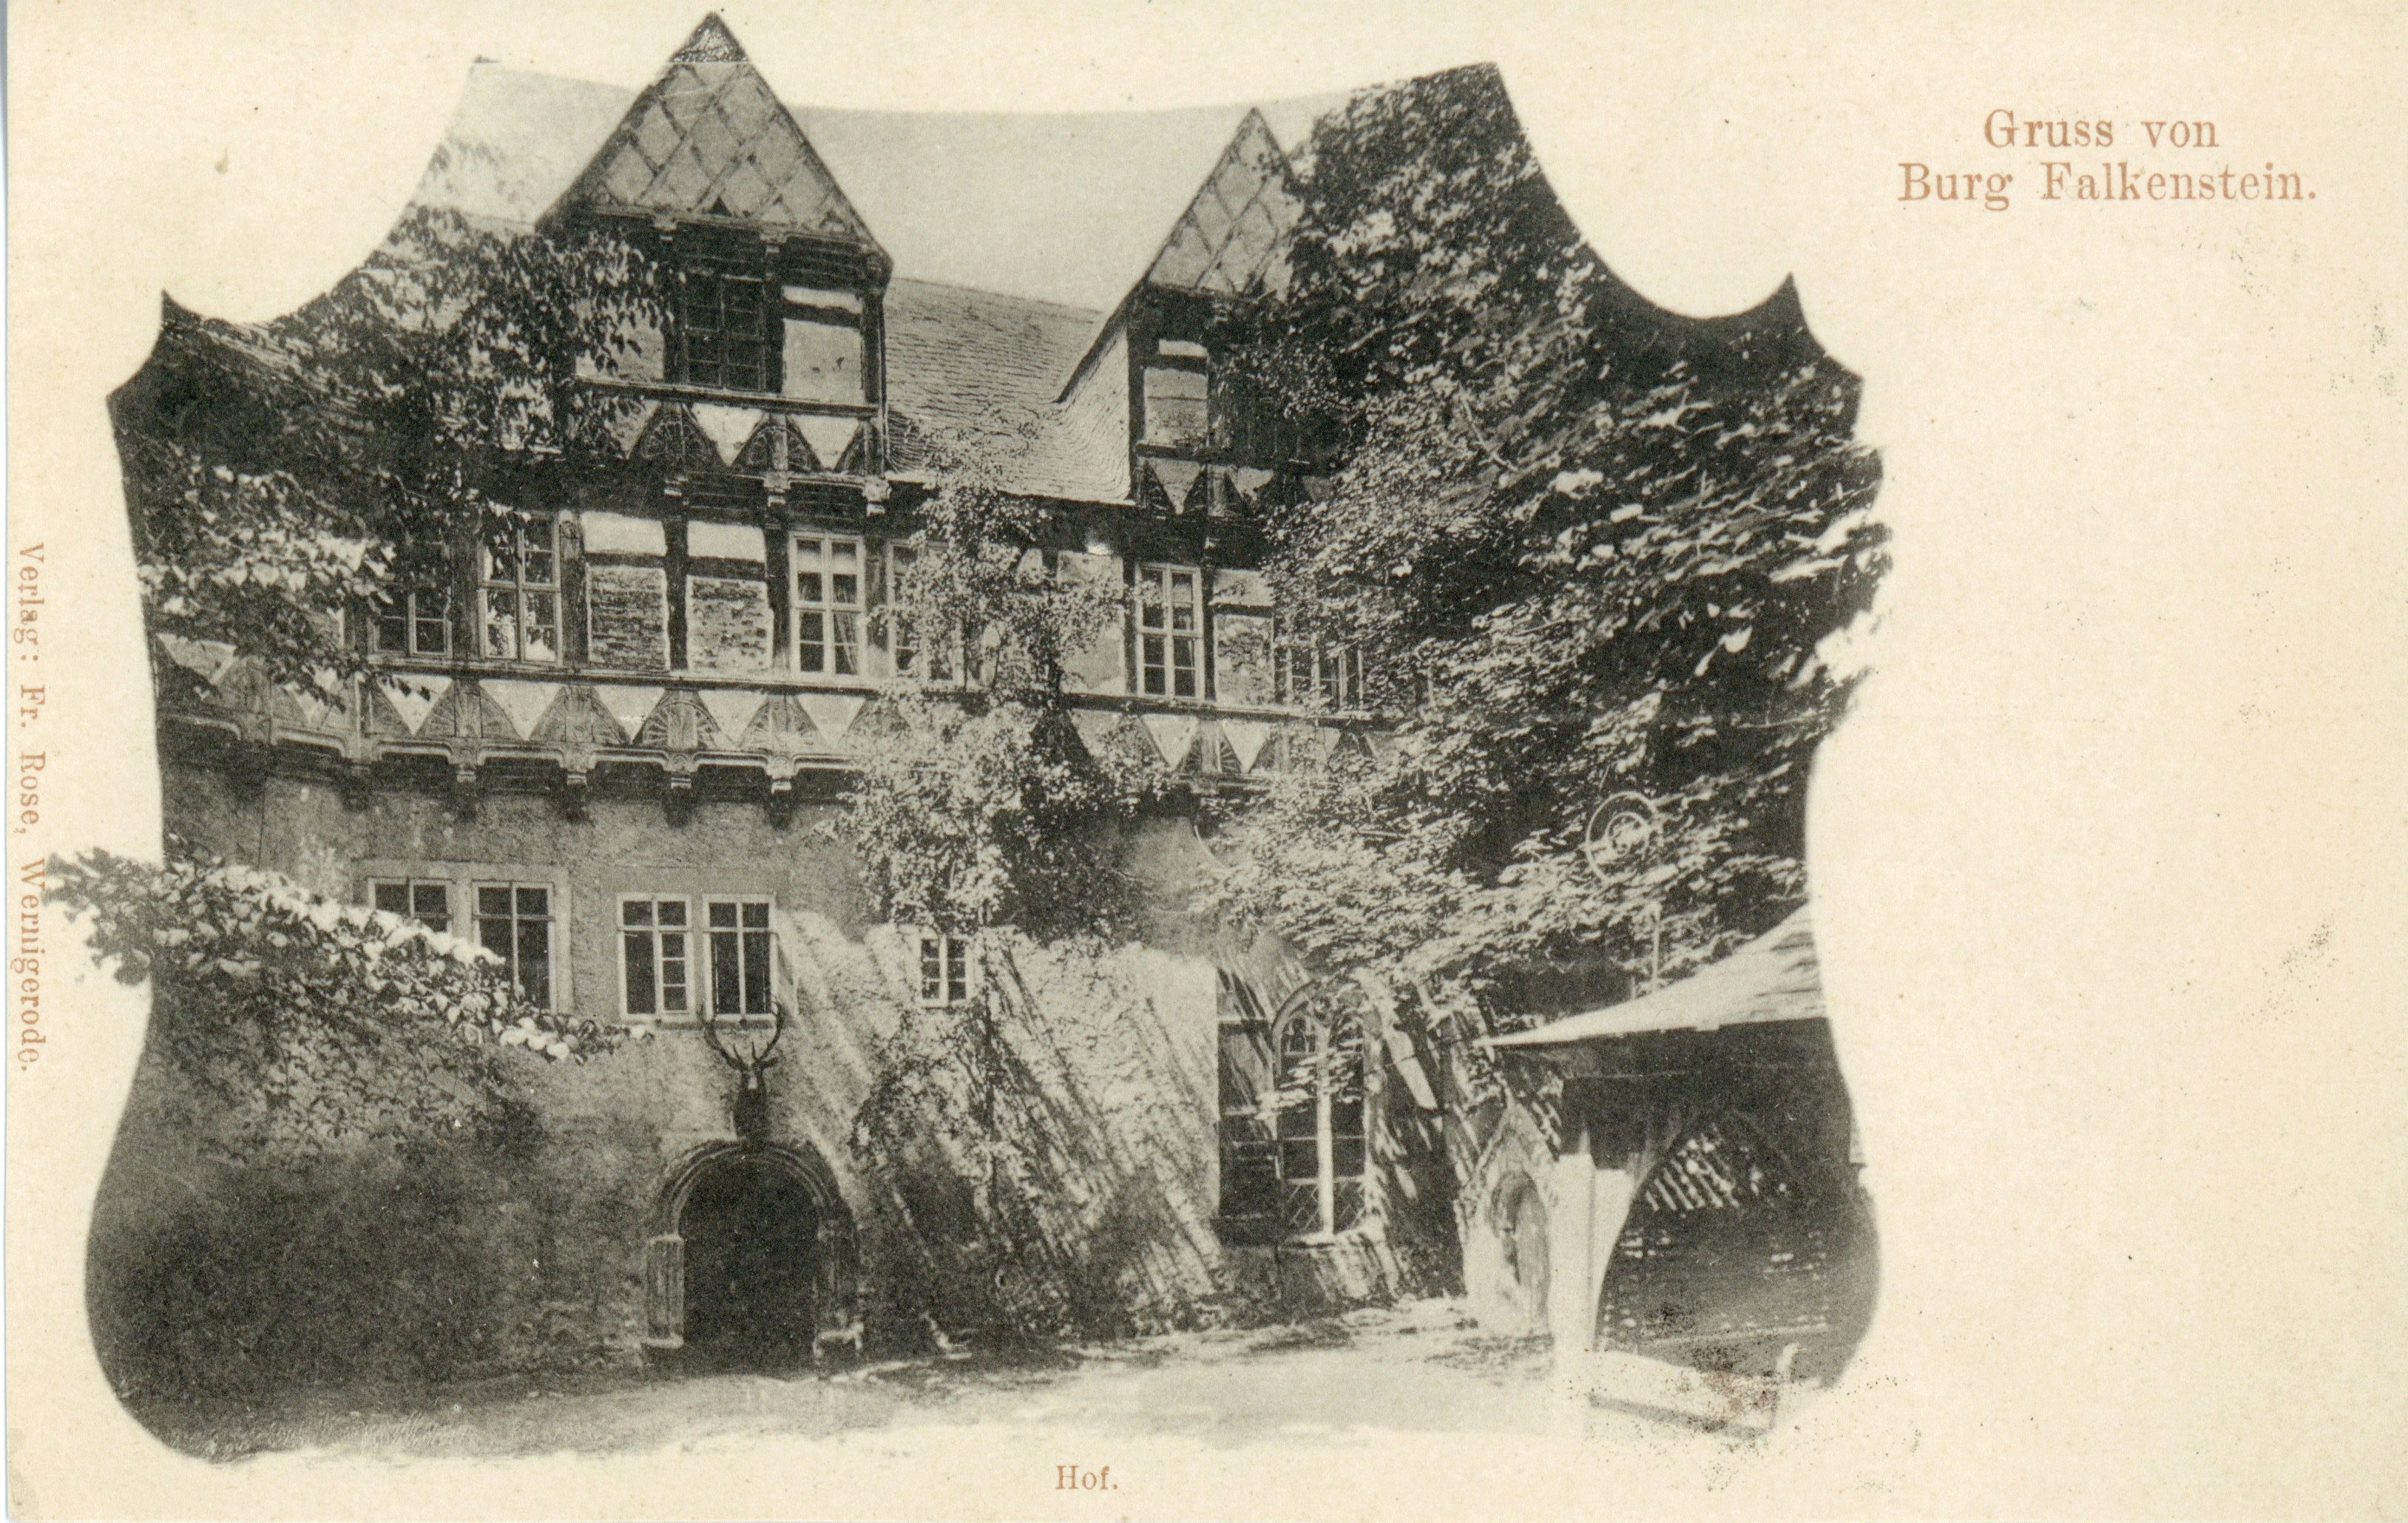 Ansichtskarte: Gruss von Burg Falkenstein. Hof. (Kulturstiftung Sachsen-Anhalt CC BY-NC-SA)